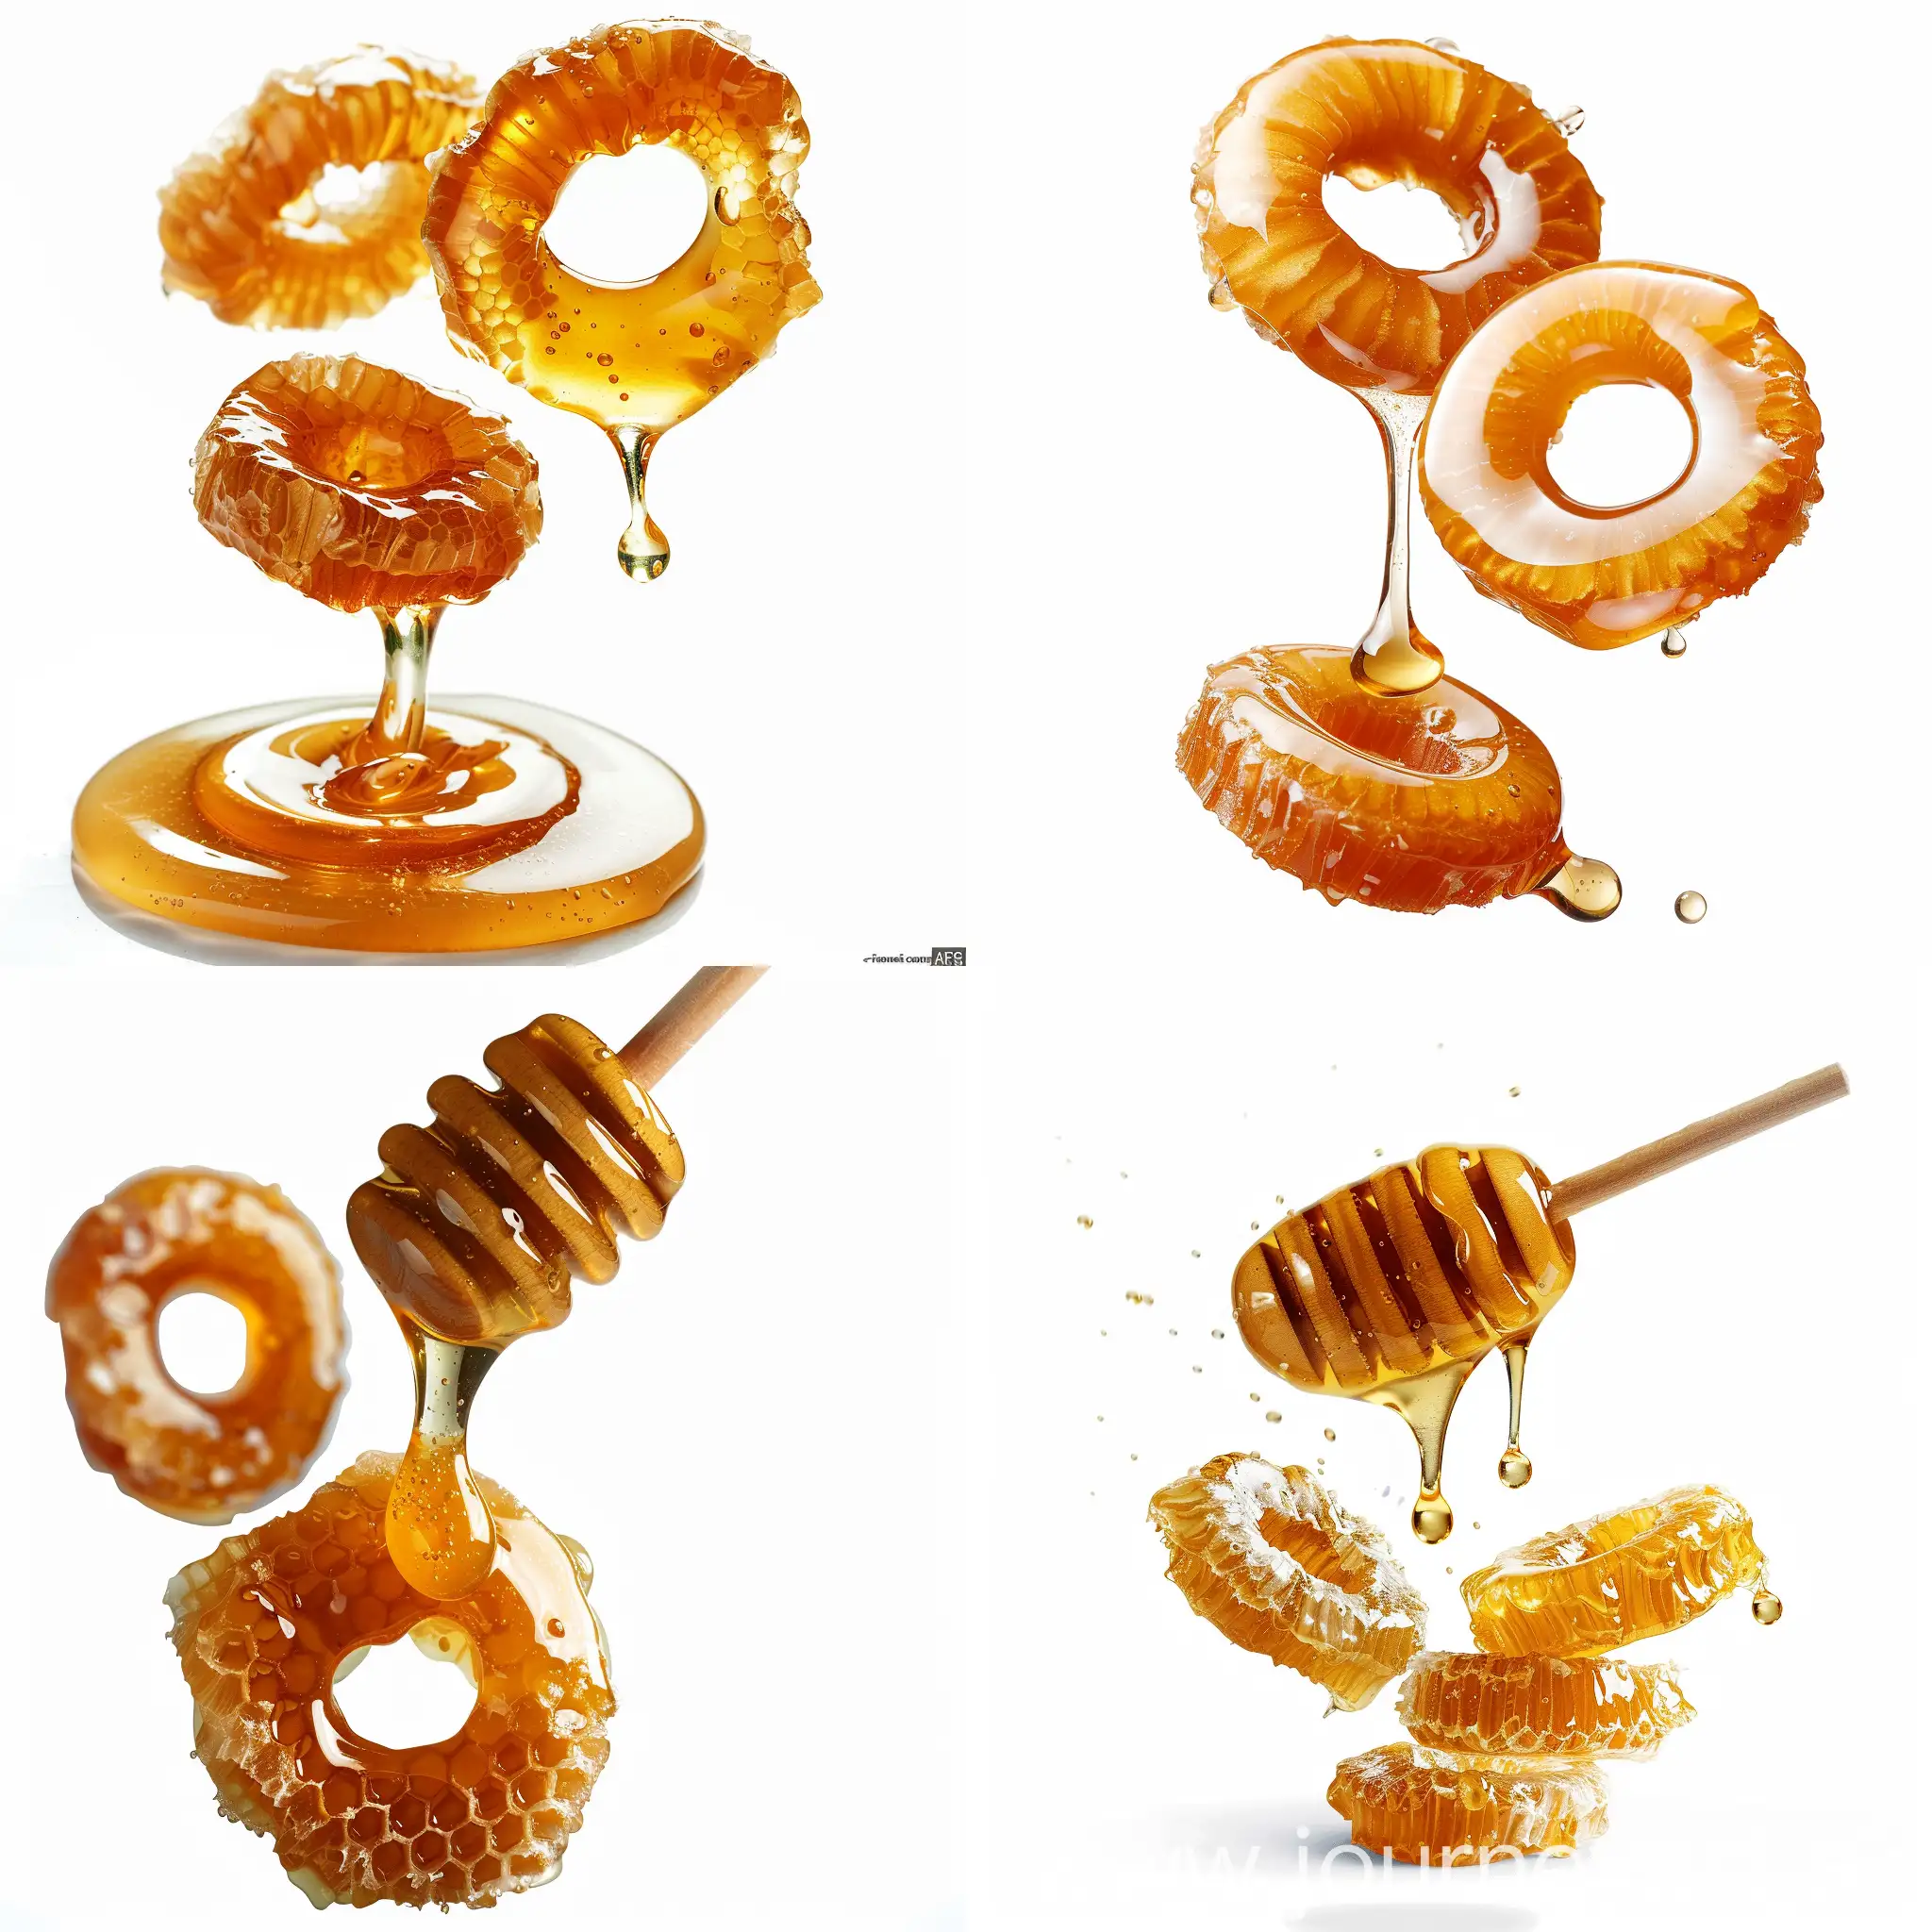 Flying-Honey-Rings-Ready-Breakfast-on-White-Background